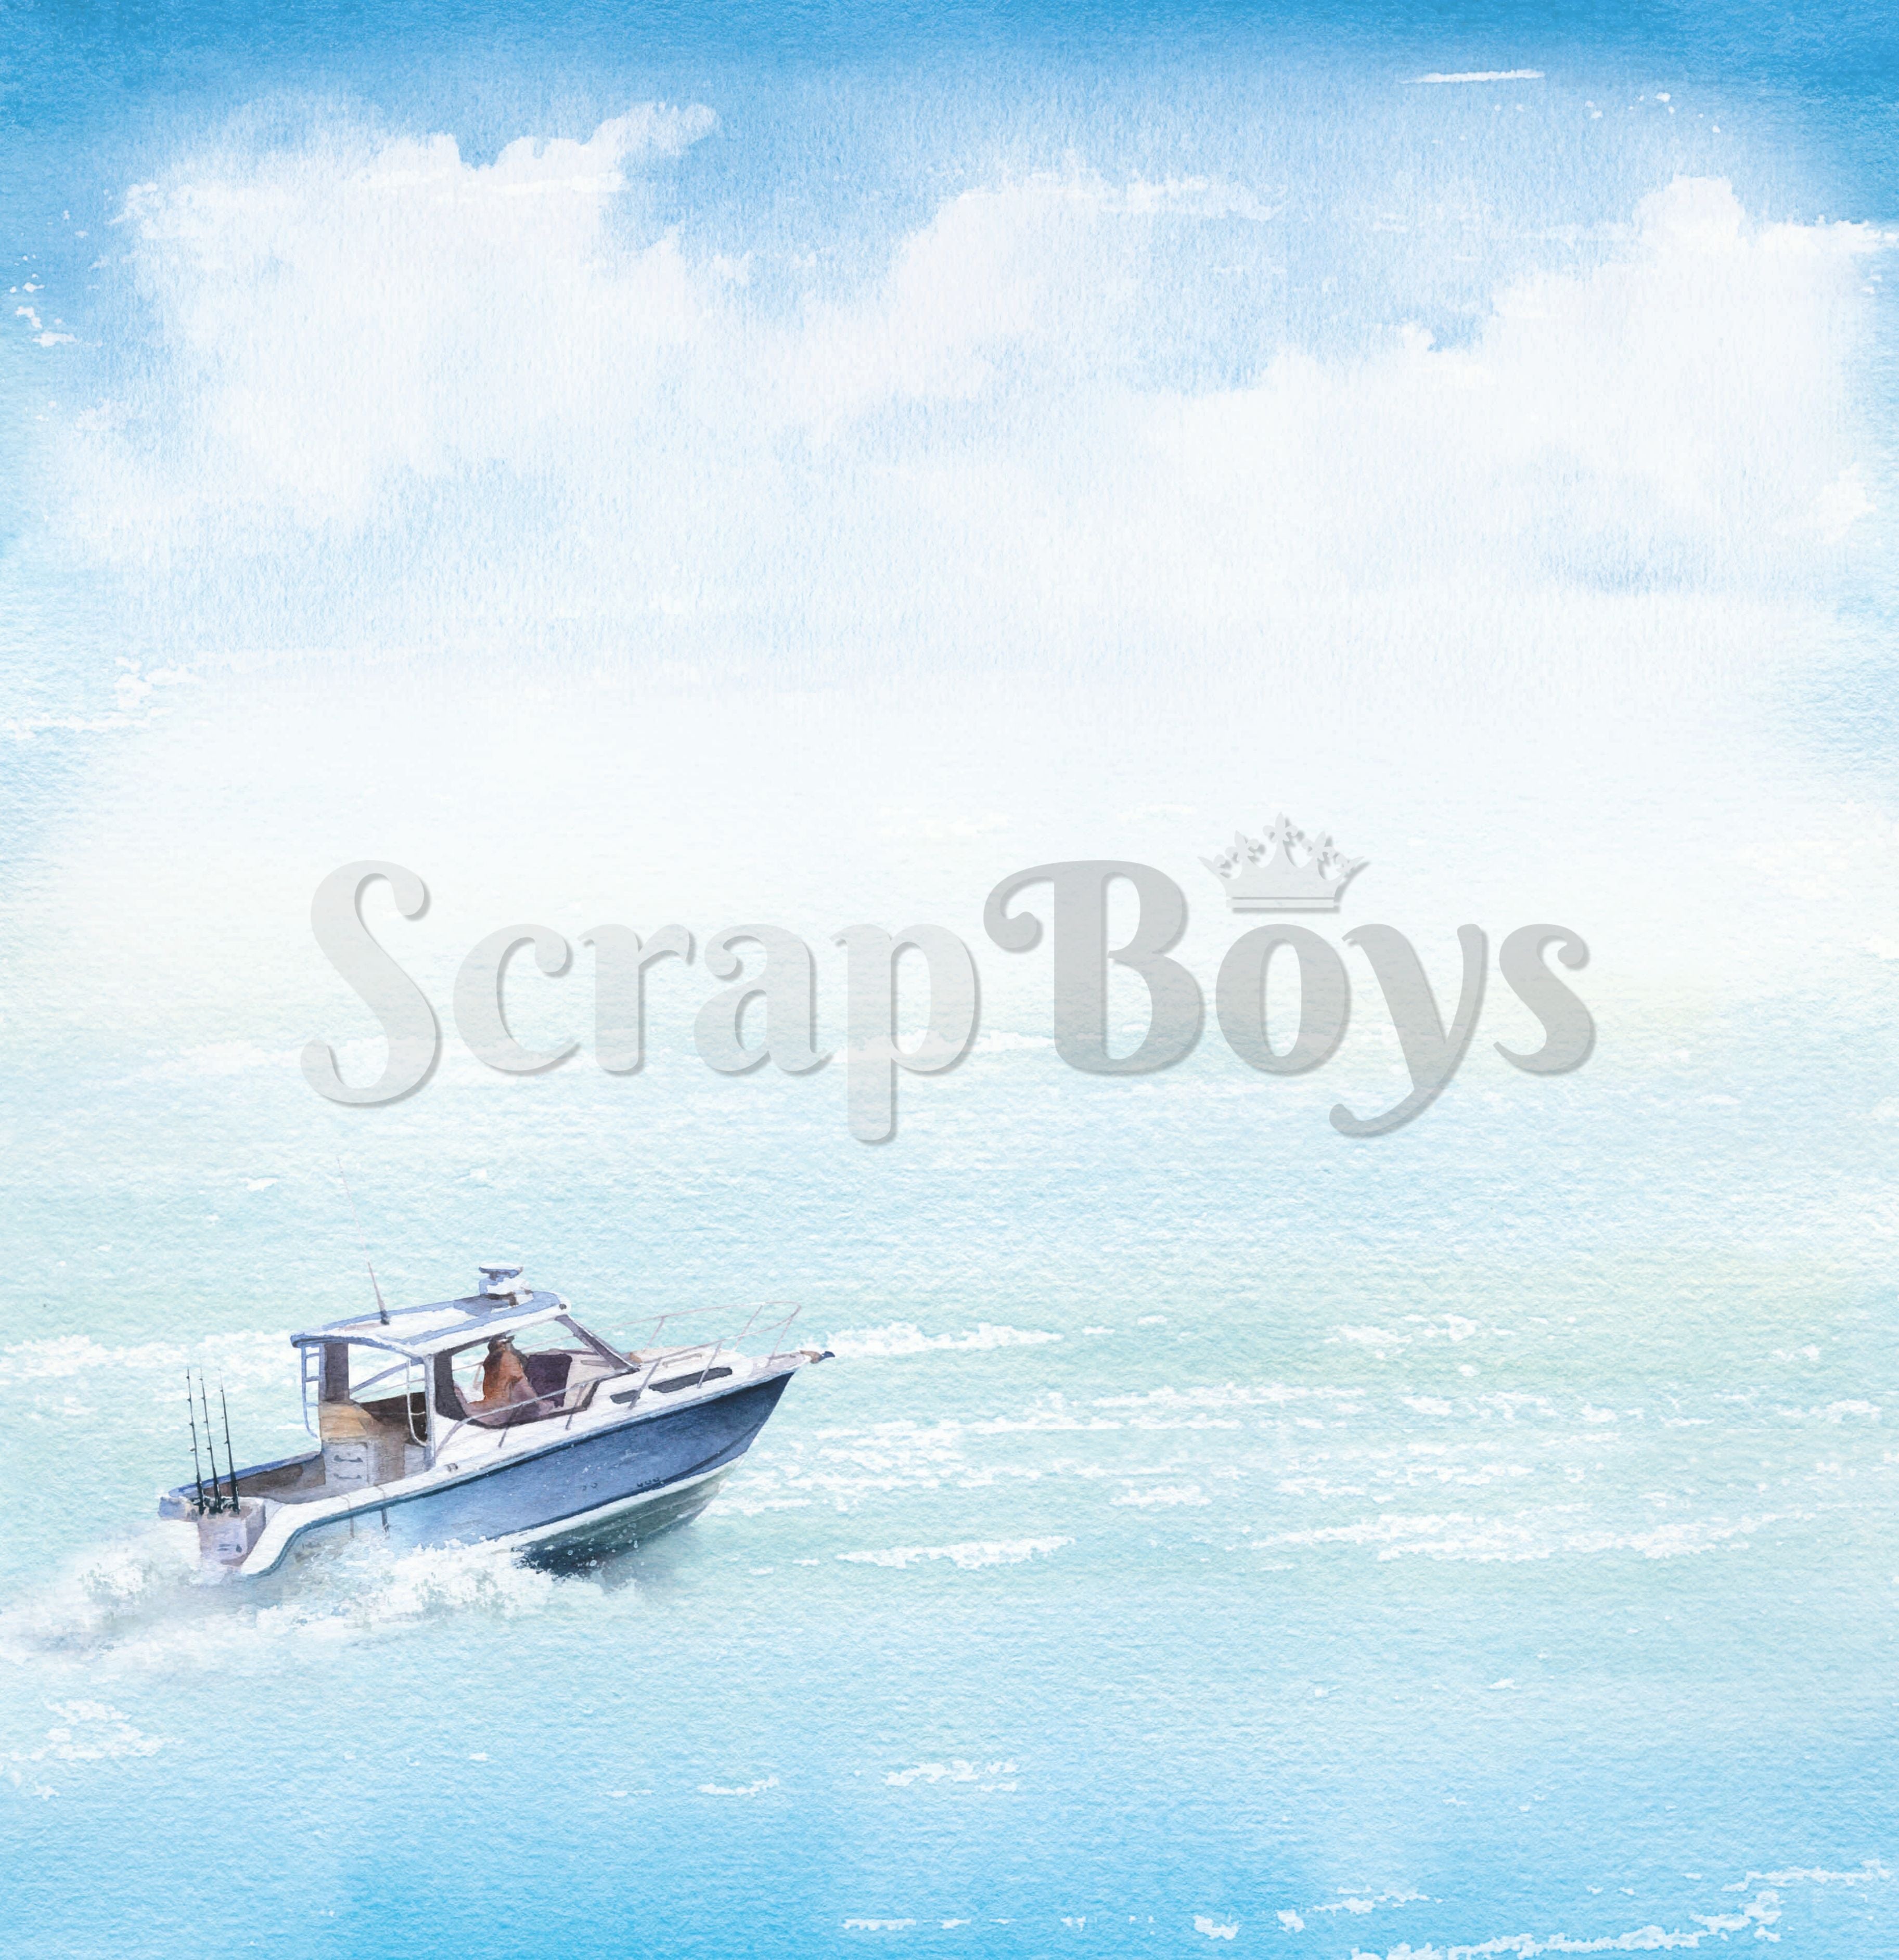 Scrapboys - Summer breeze - Cut Outs - 12x12"